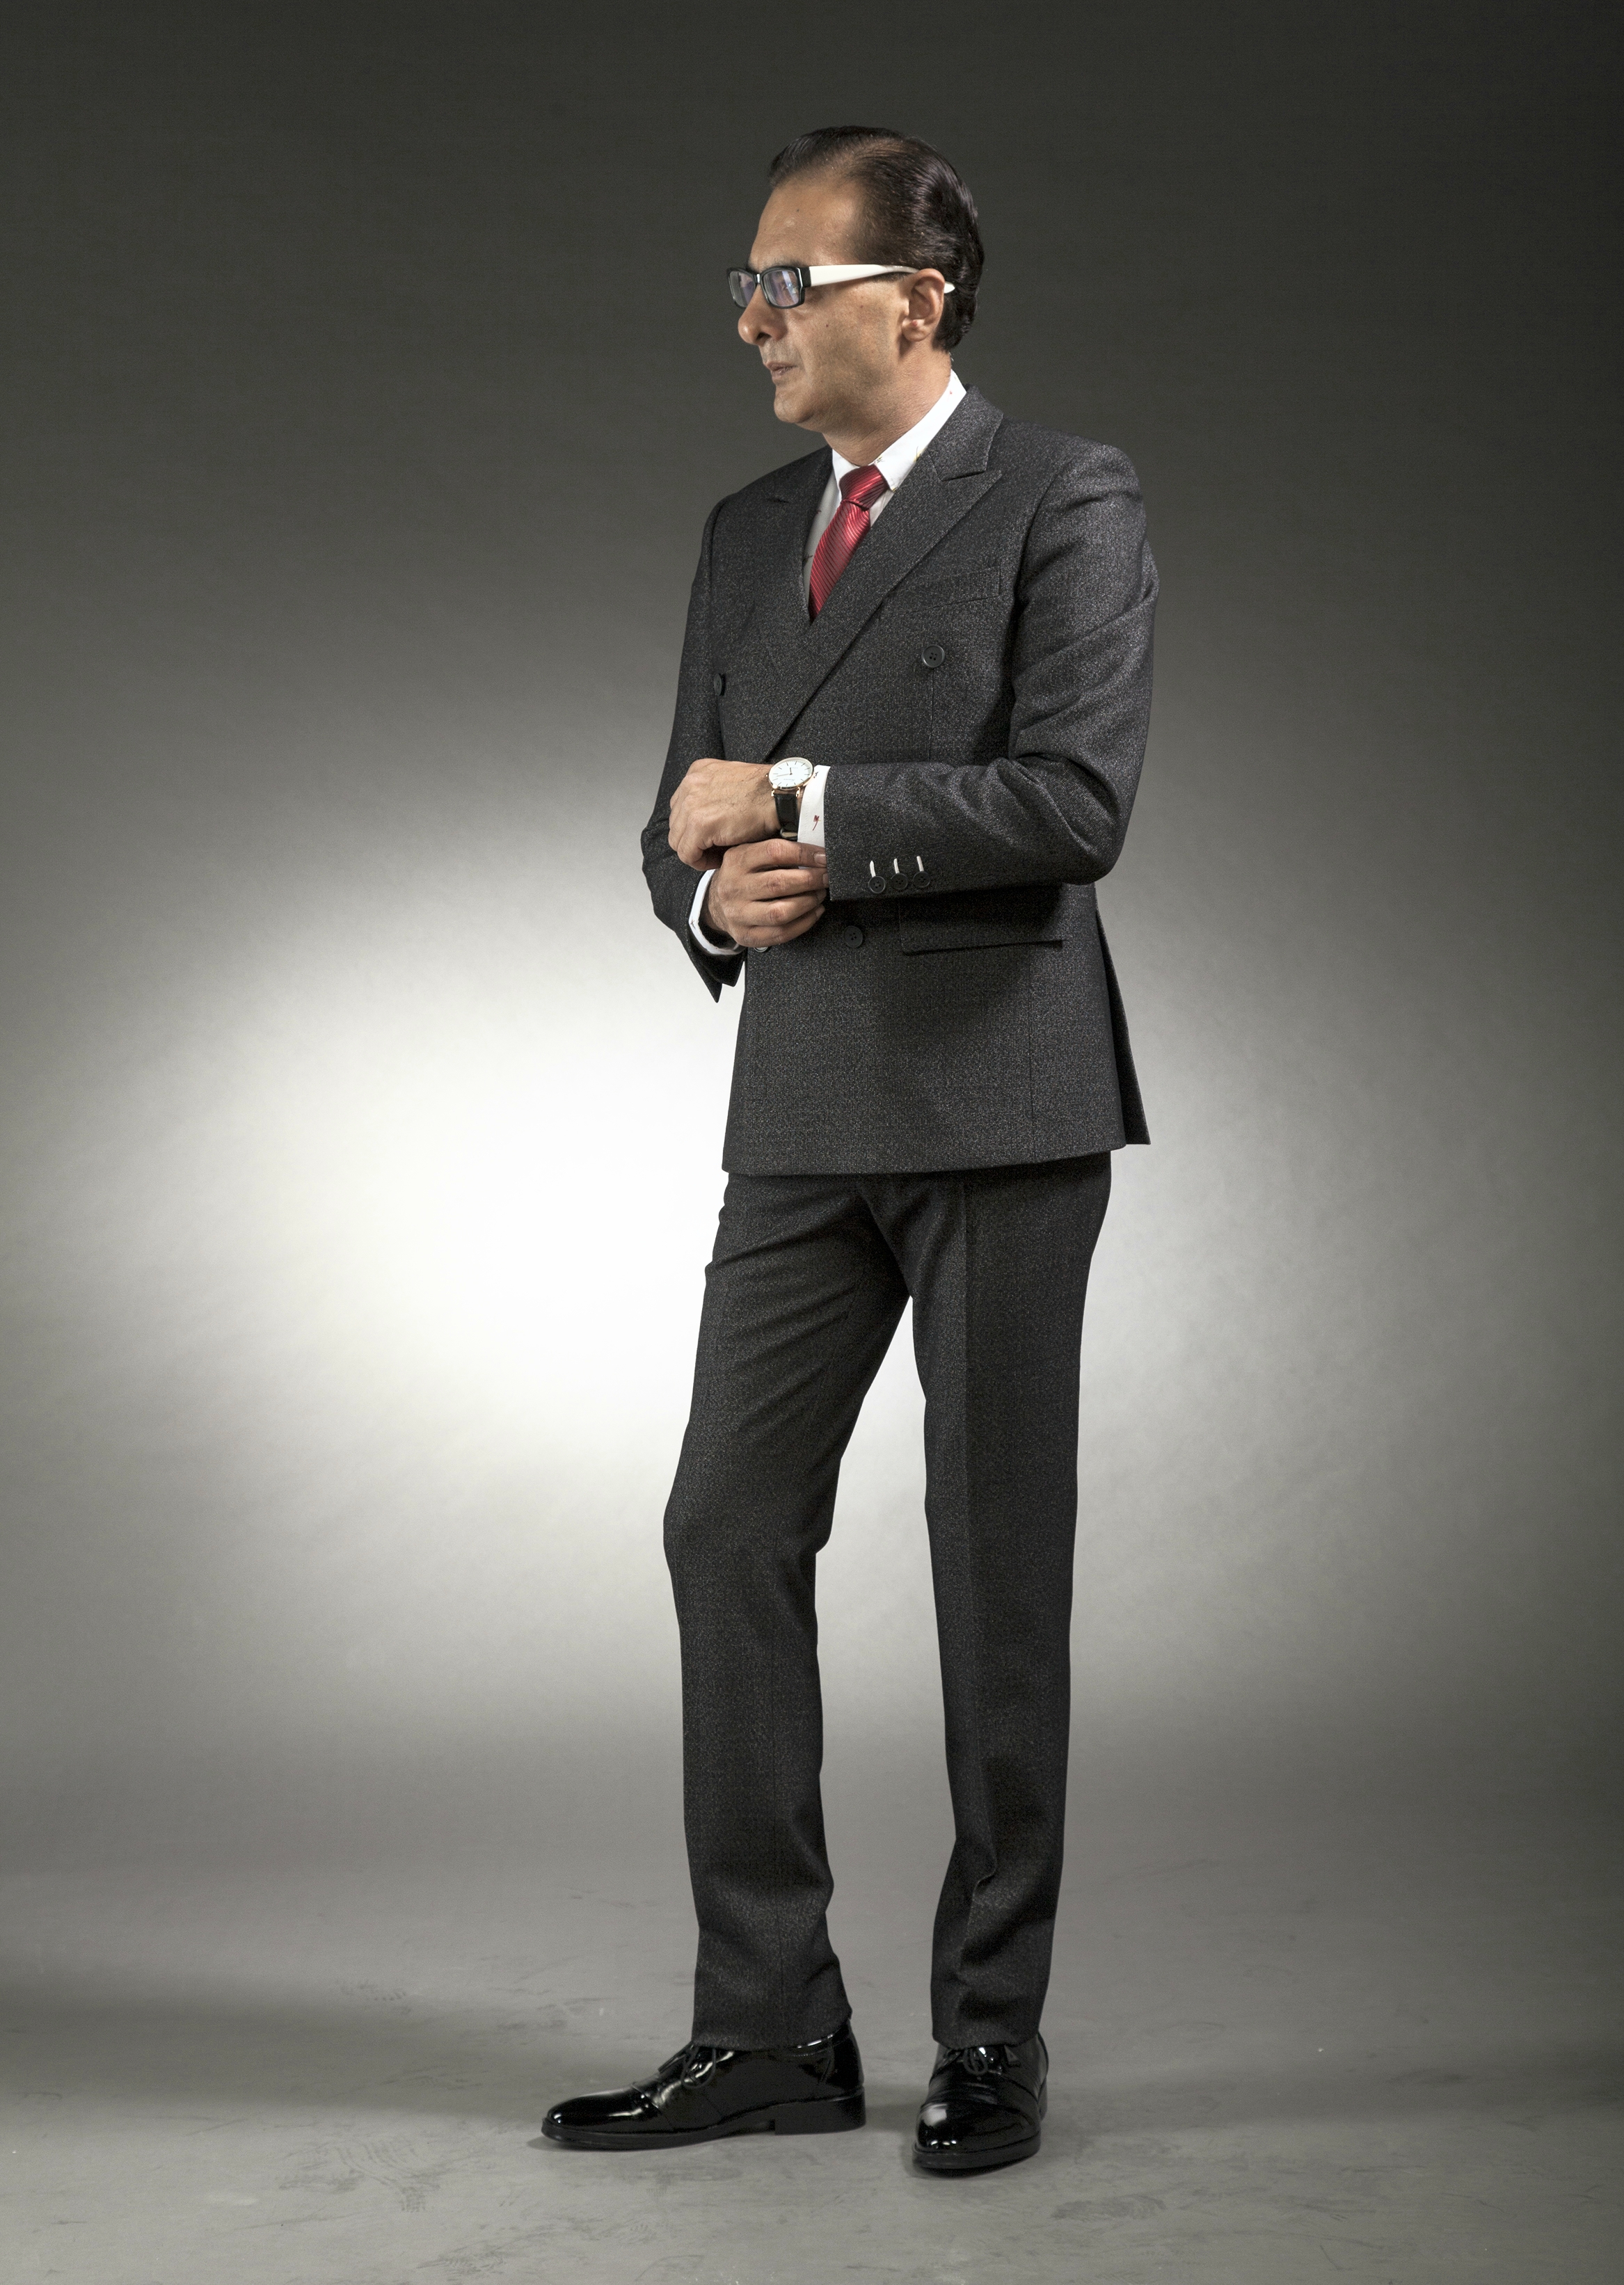 MST-5042-02-rent_rental_hire_tuxedo_suit_black_tie_suit_designer_suits_shop_tailor